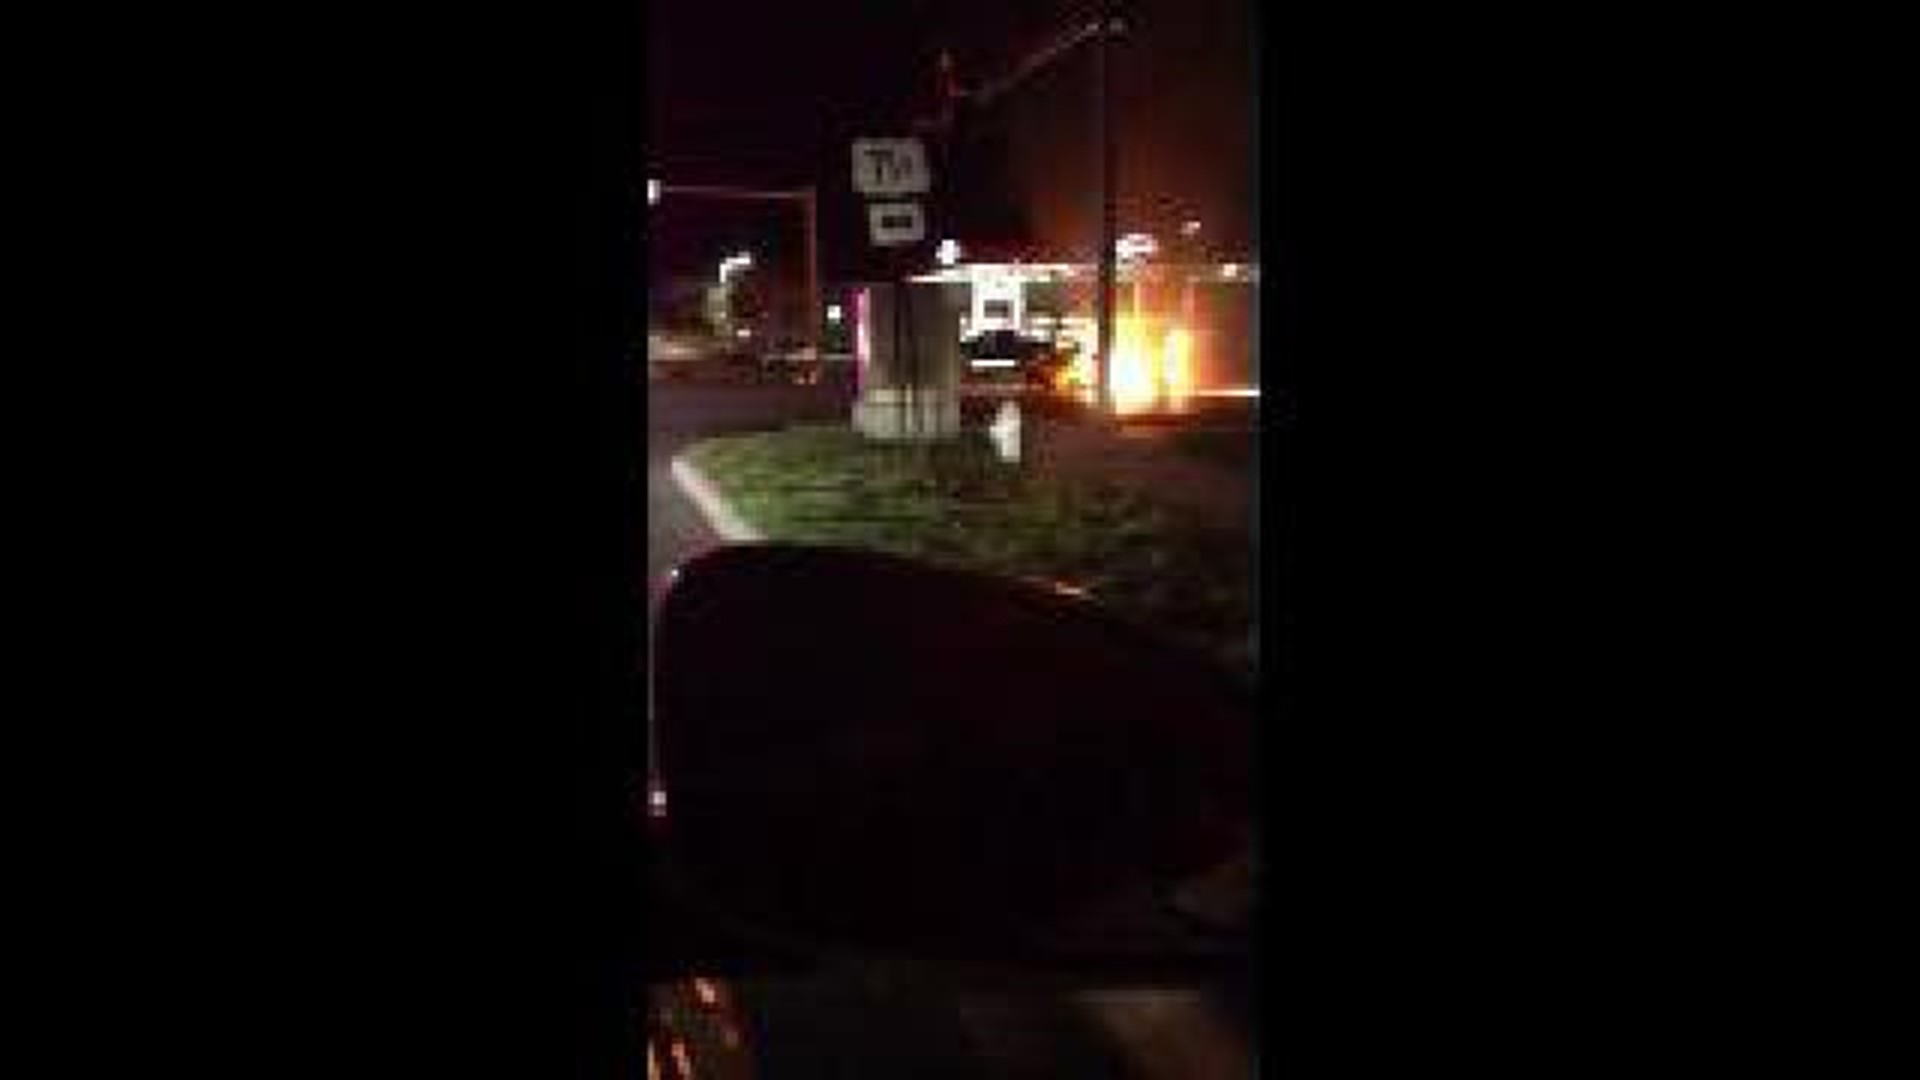 Van fire in Fayetteville